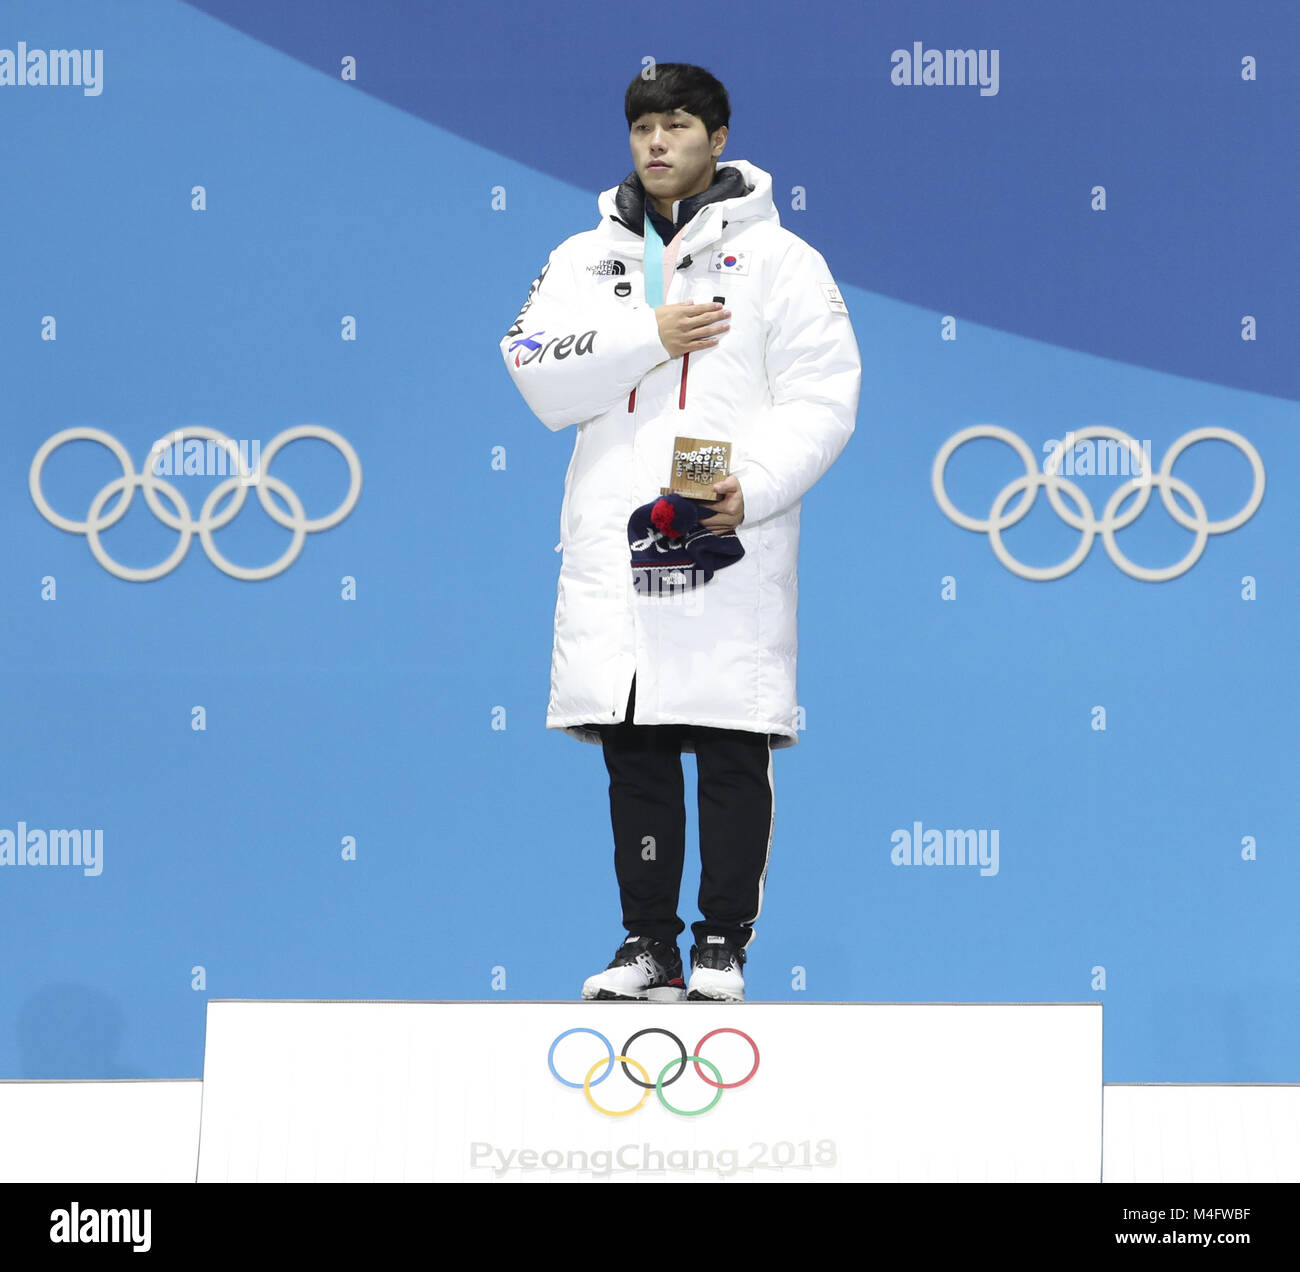 Pyeongchang, Corée du Sud. 16 Février, 2018. Médaillé d'or de la Corée du Sud s'Sungbin Yun sur podium lors d'une cérémonie de remise de médailles de la Men's skeleton aux Jeux Olympiques d'hiver de PyeongChang 2018 Médaille au Plaza, PyeongChang, Corée du Sud, 16 février 2018. Credit : Bai Xuefei/Xinhua/Alamy Live News Banque D'Images